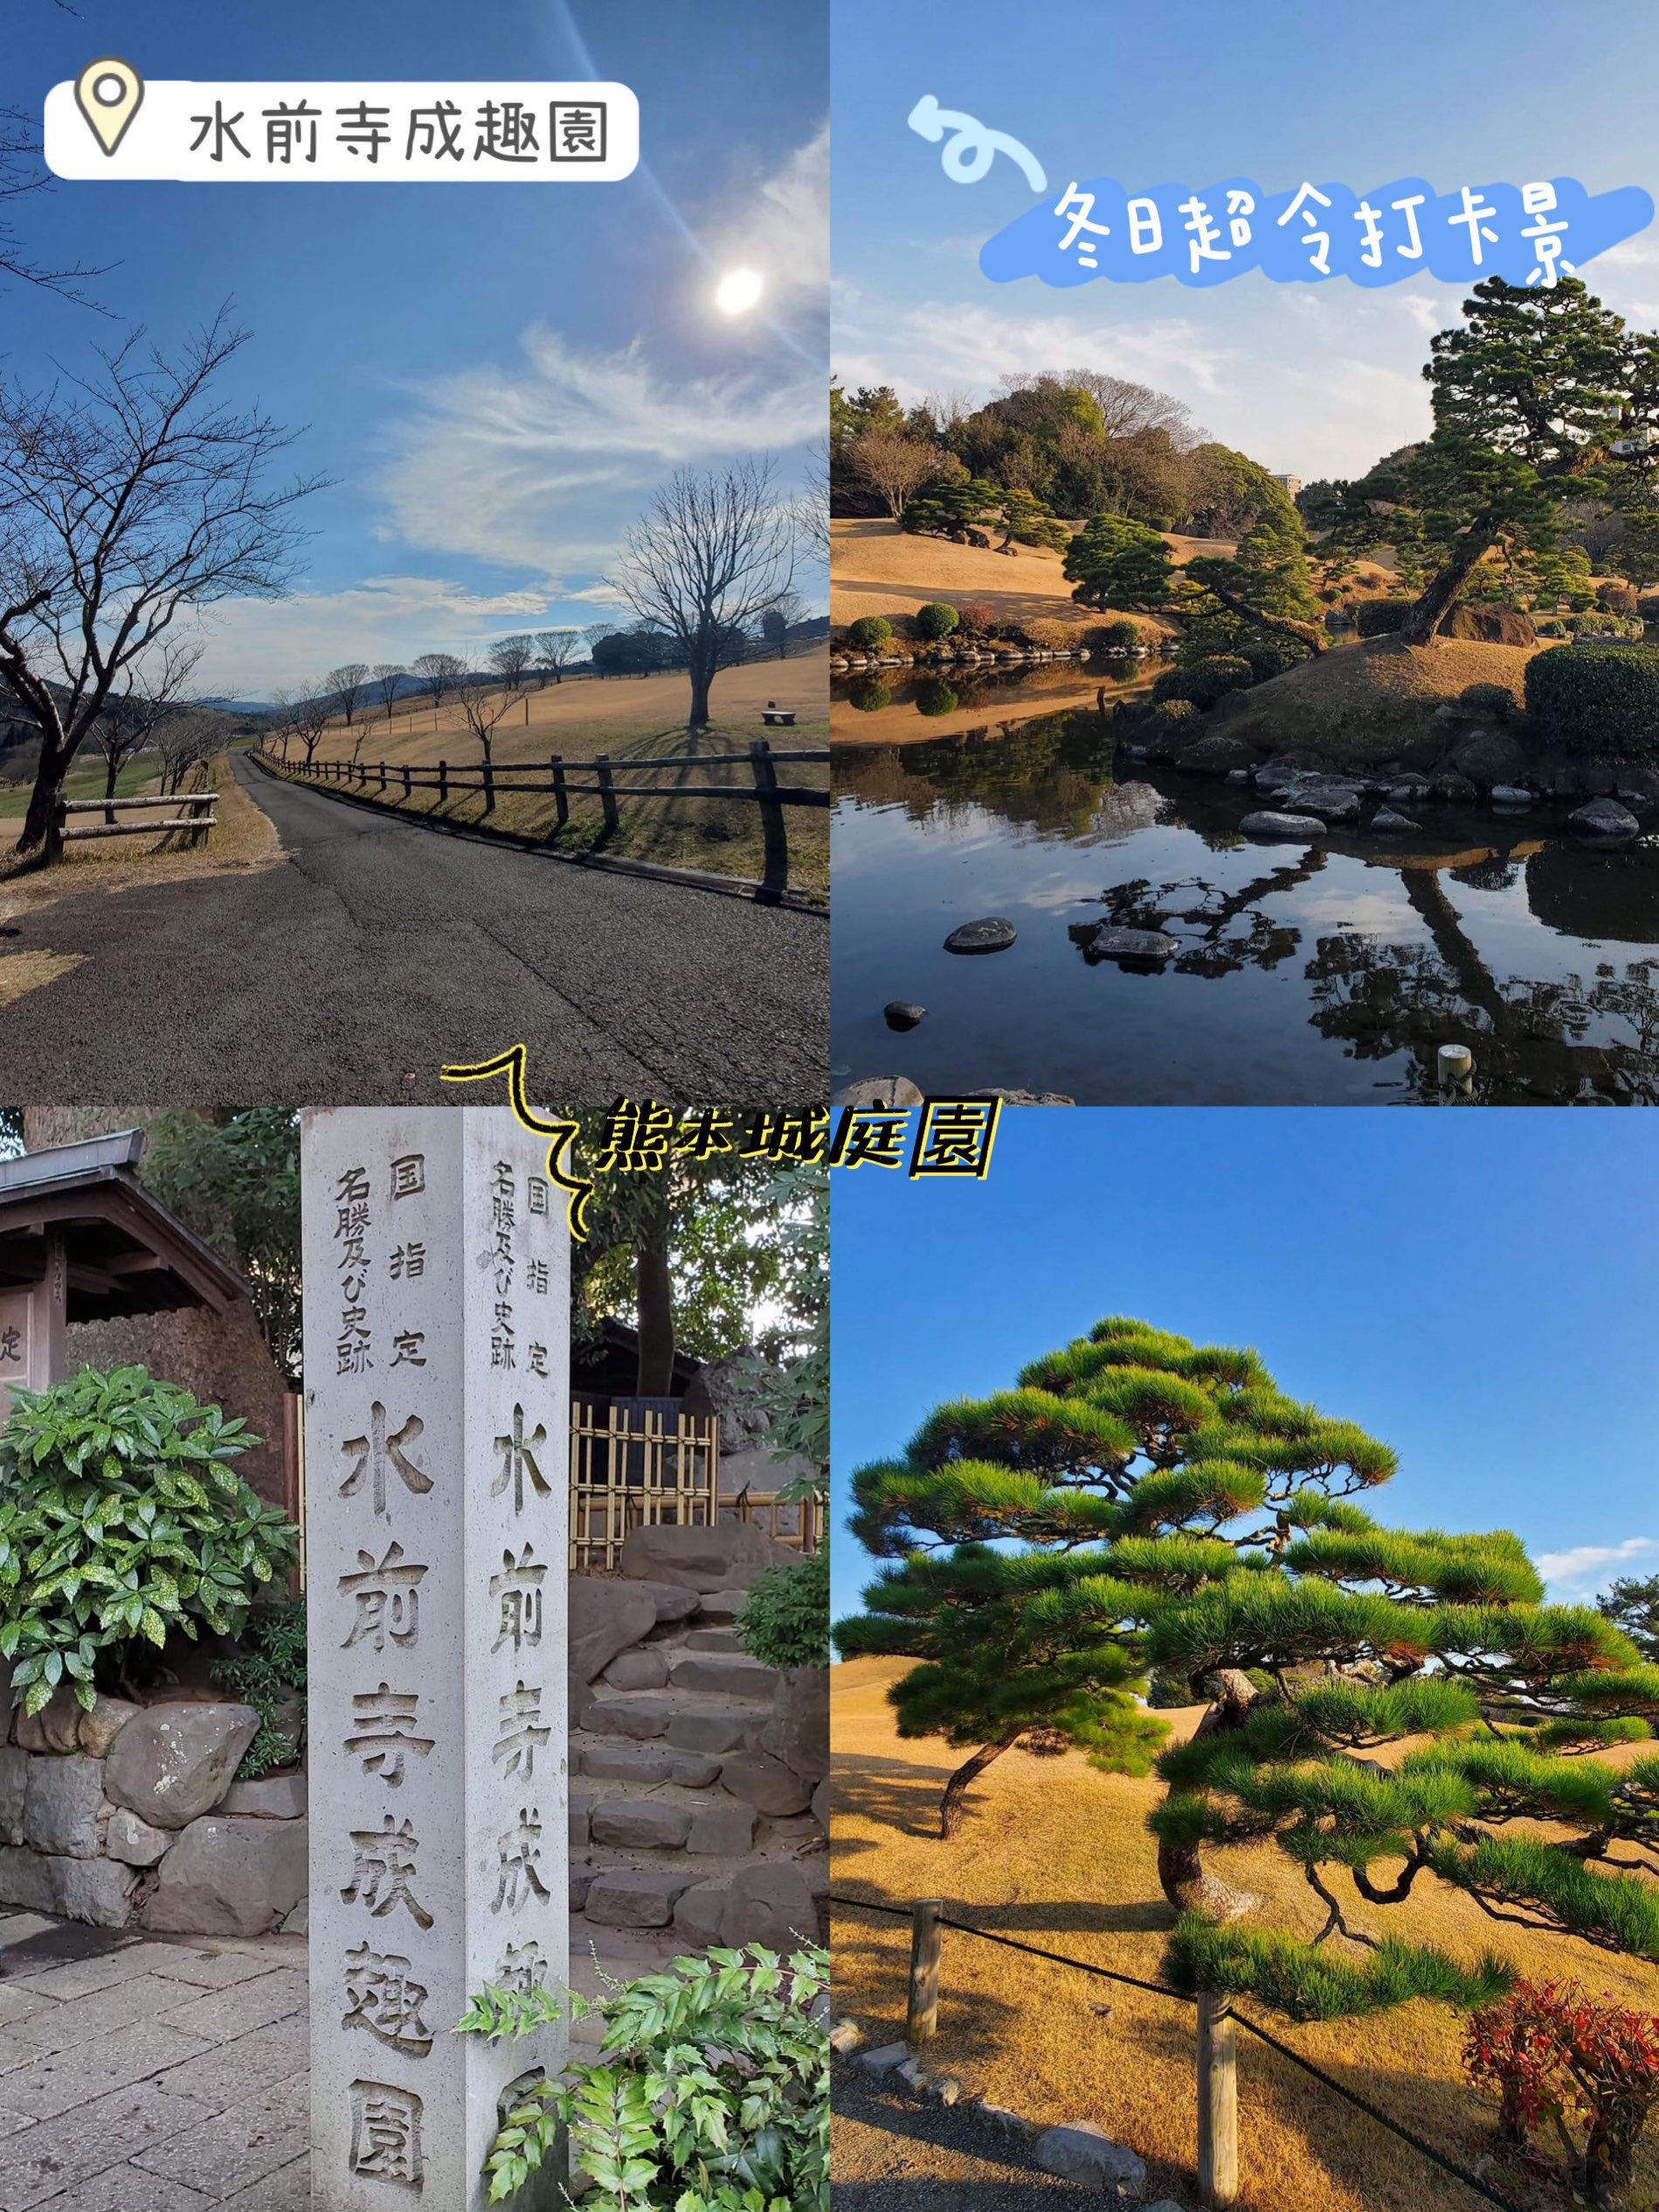 熊本城水前寺成趣园😎😀日式花园‼️冬季超令